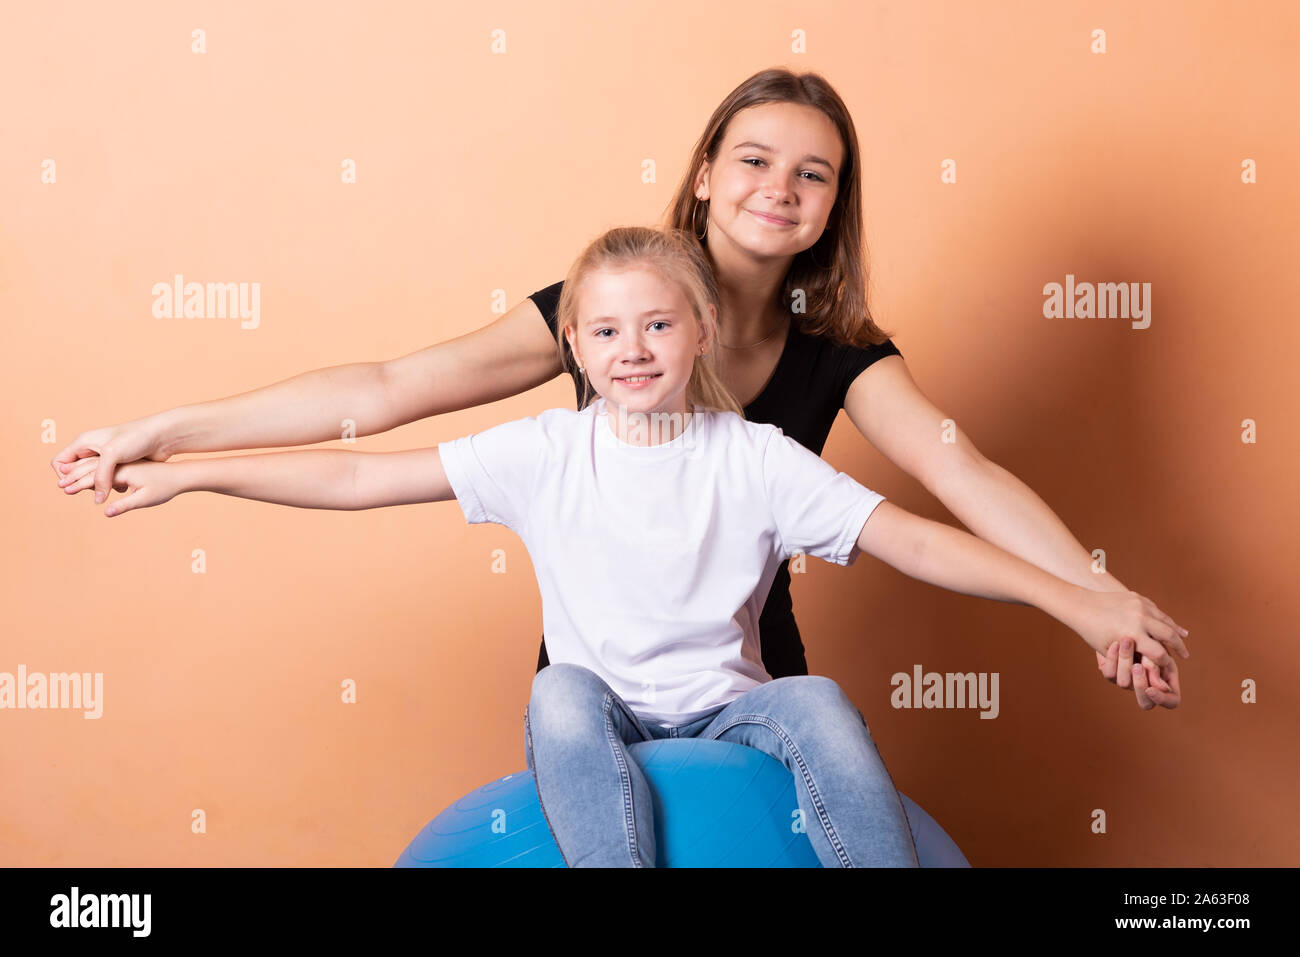 Mädchen auf einem Gymnastikball, auf einem hellen orange hinterlegt. Stockfoto